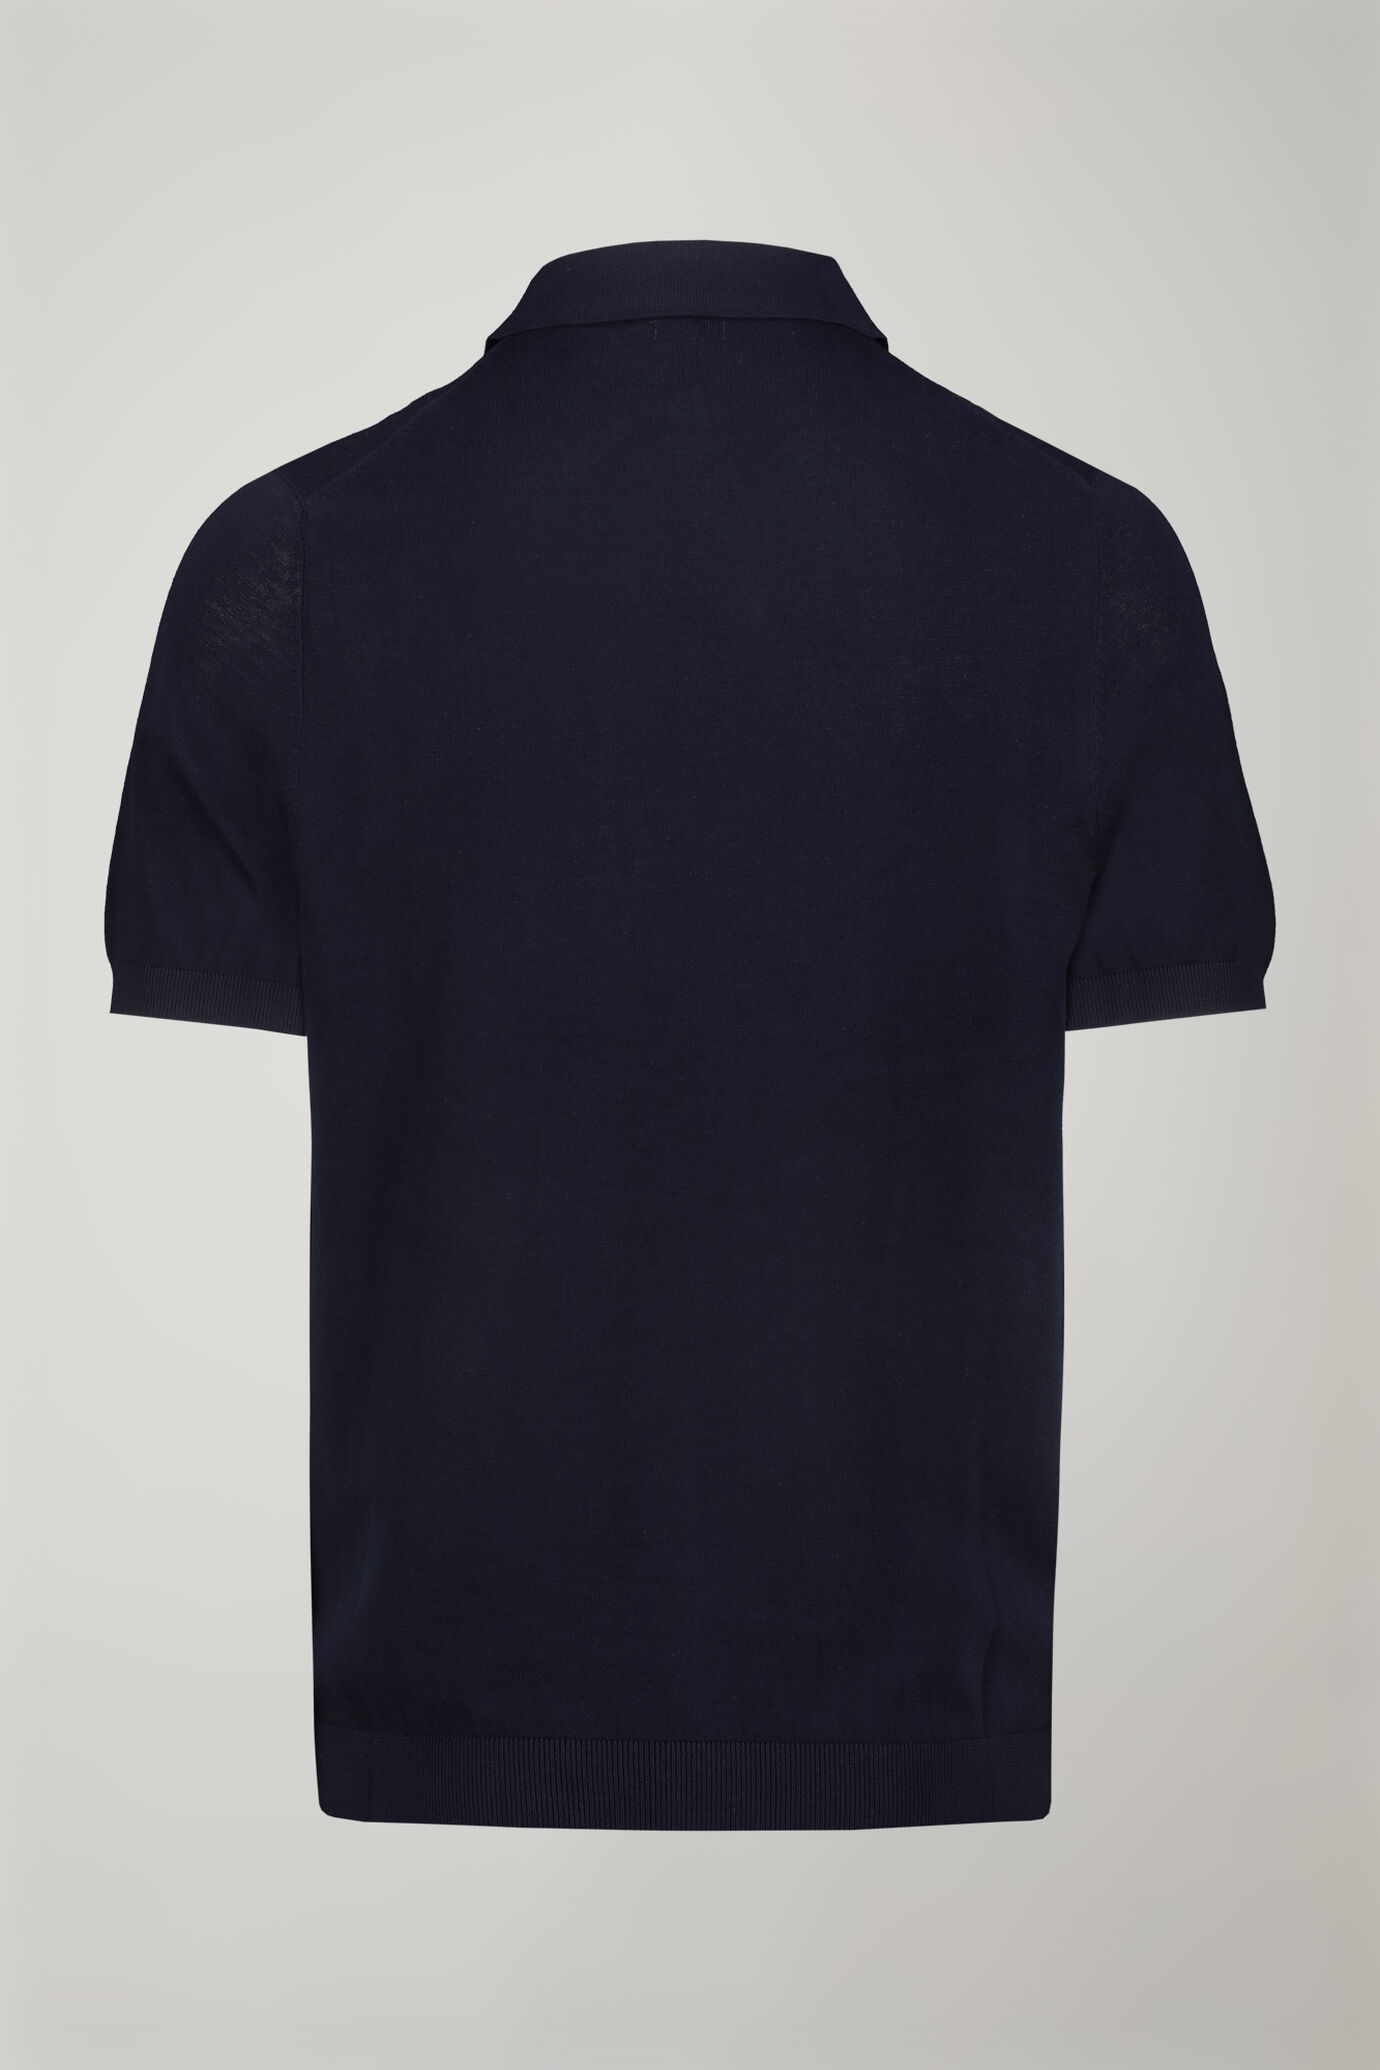 Herren-Poloshirt aus 100 % Baumwolle mit kurzen Ärmeln in normaler Passform image number 5